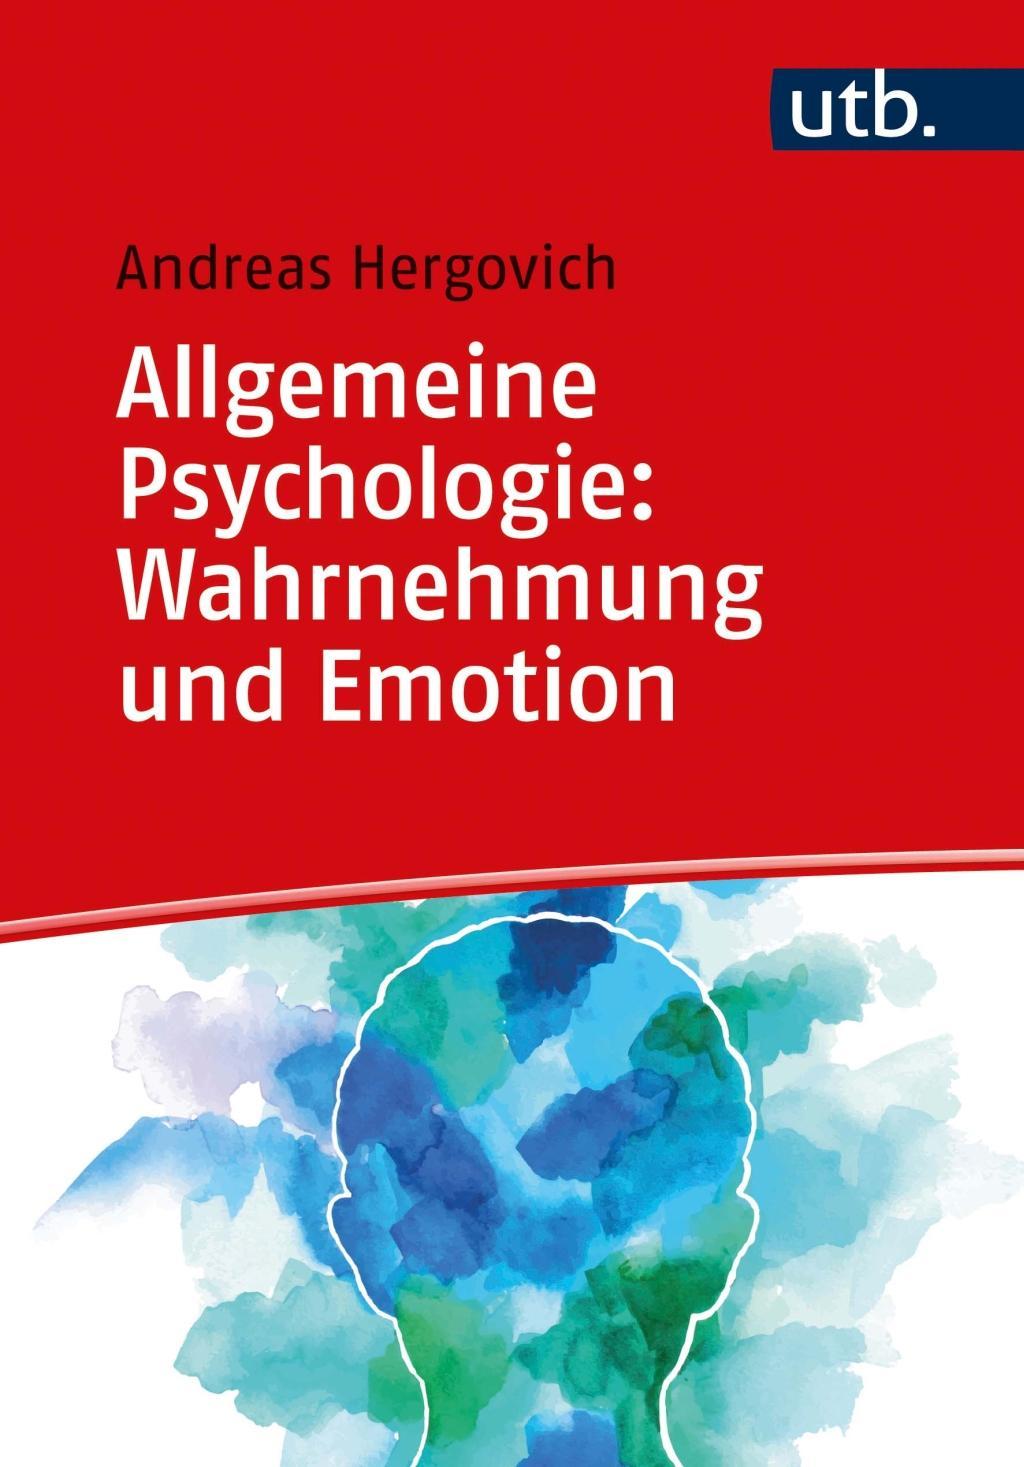 Книга Allgemeine Psychologie: Wahrnehmung und Emotion Andreas Hergovich